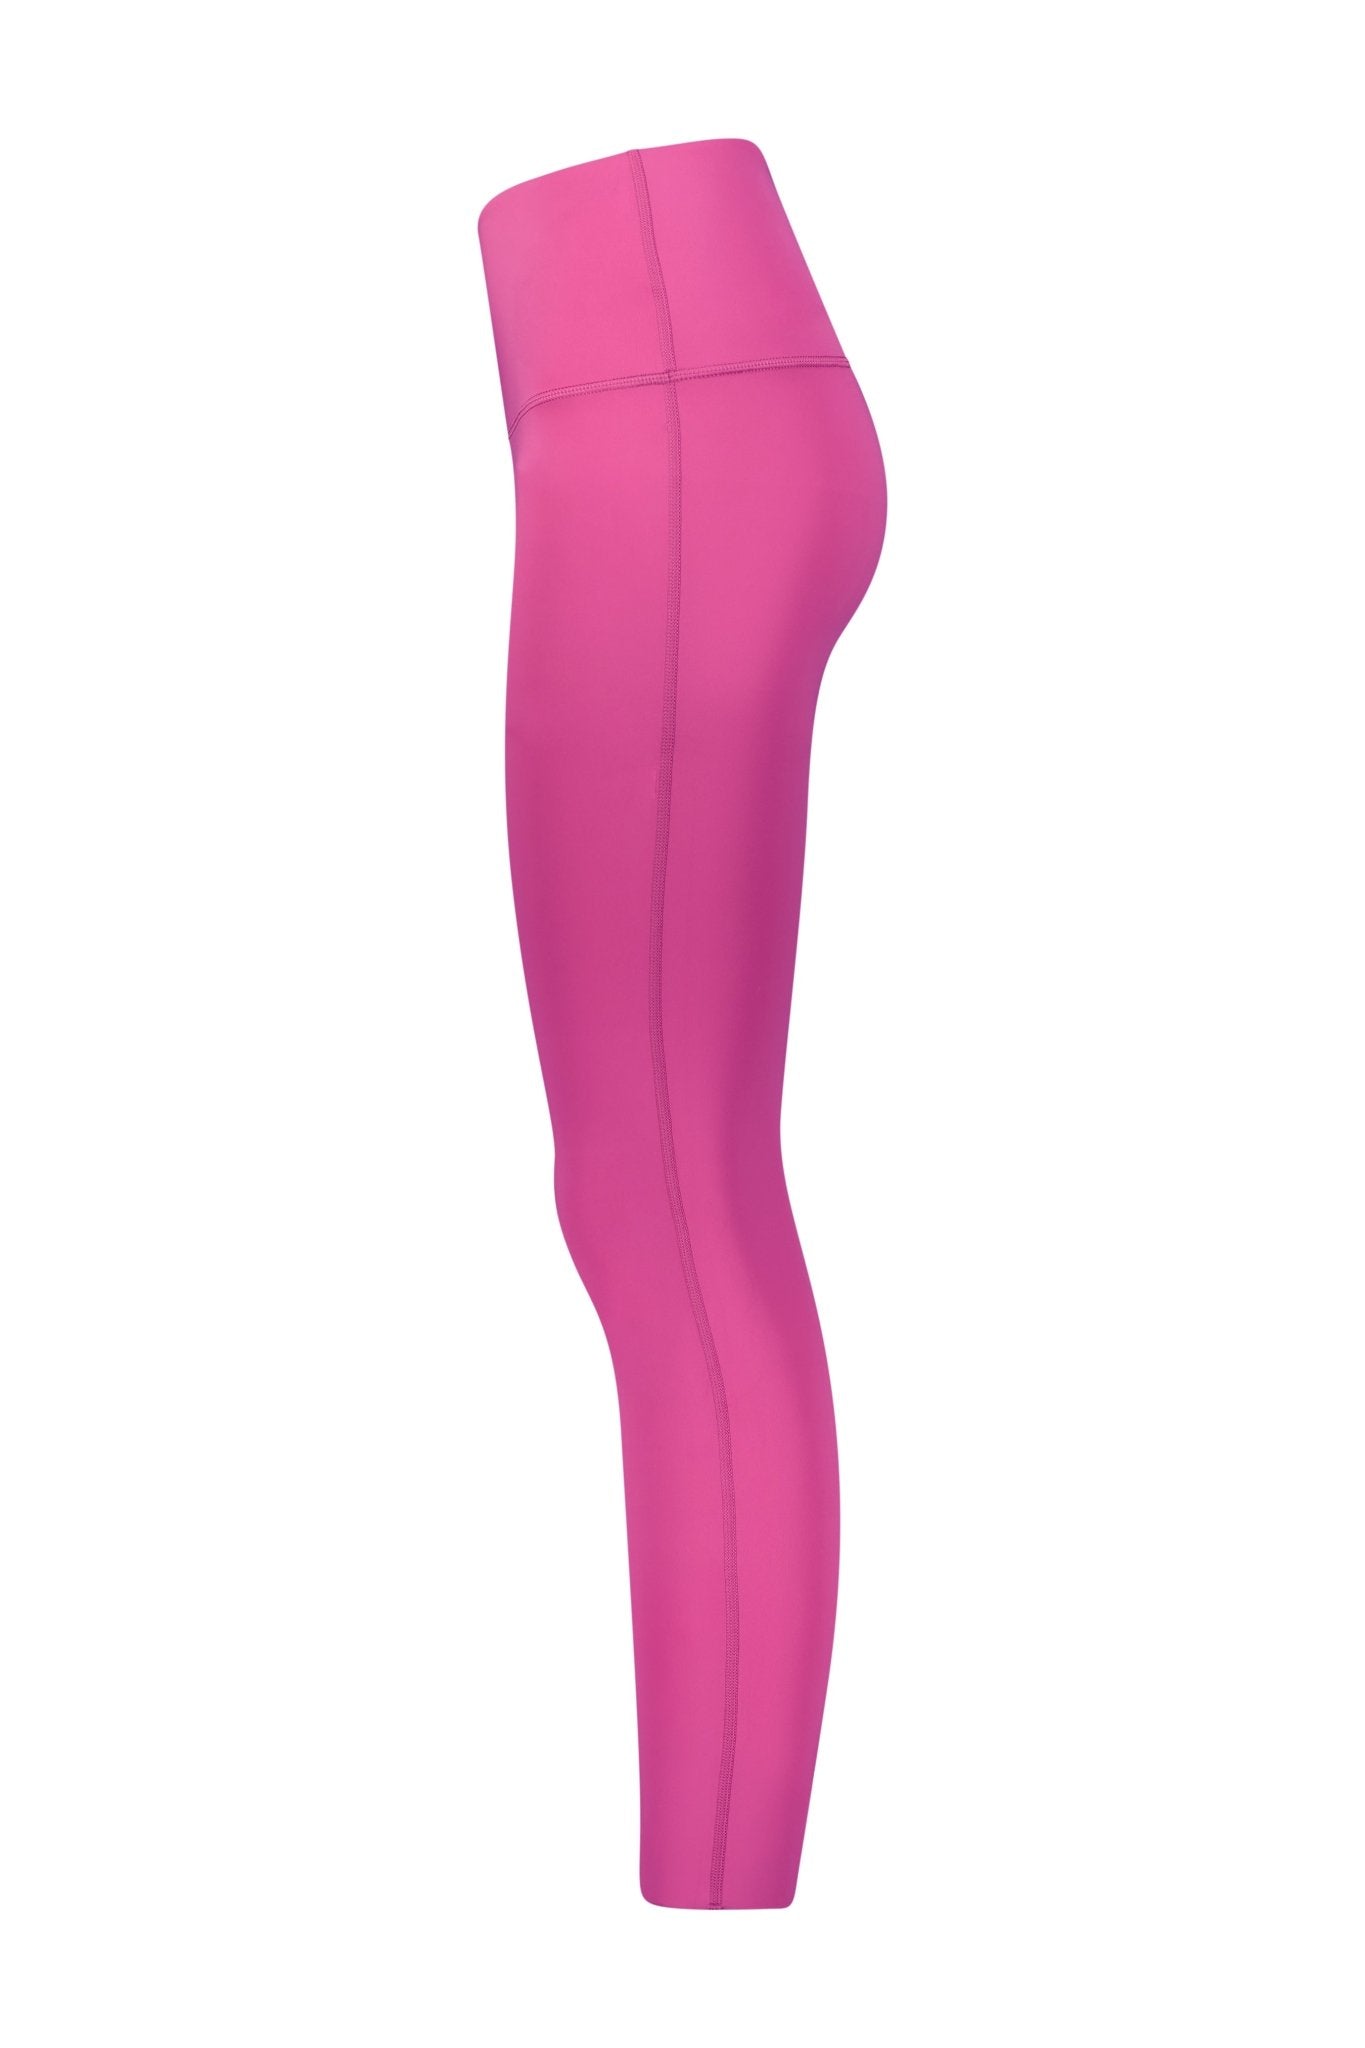 Pink Fluorescent High Waisted leggings - Kre'level